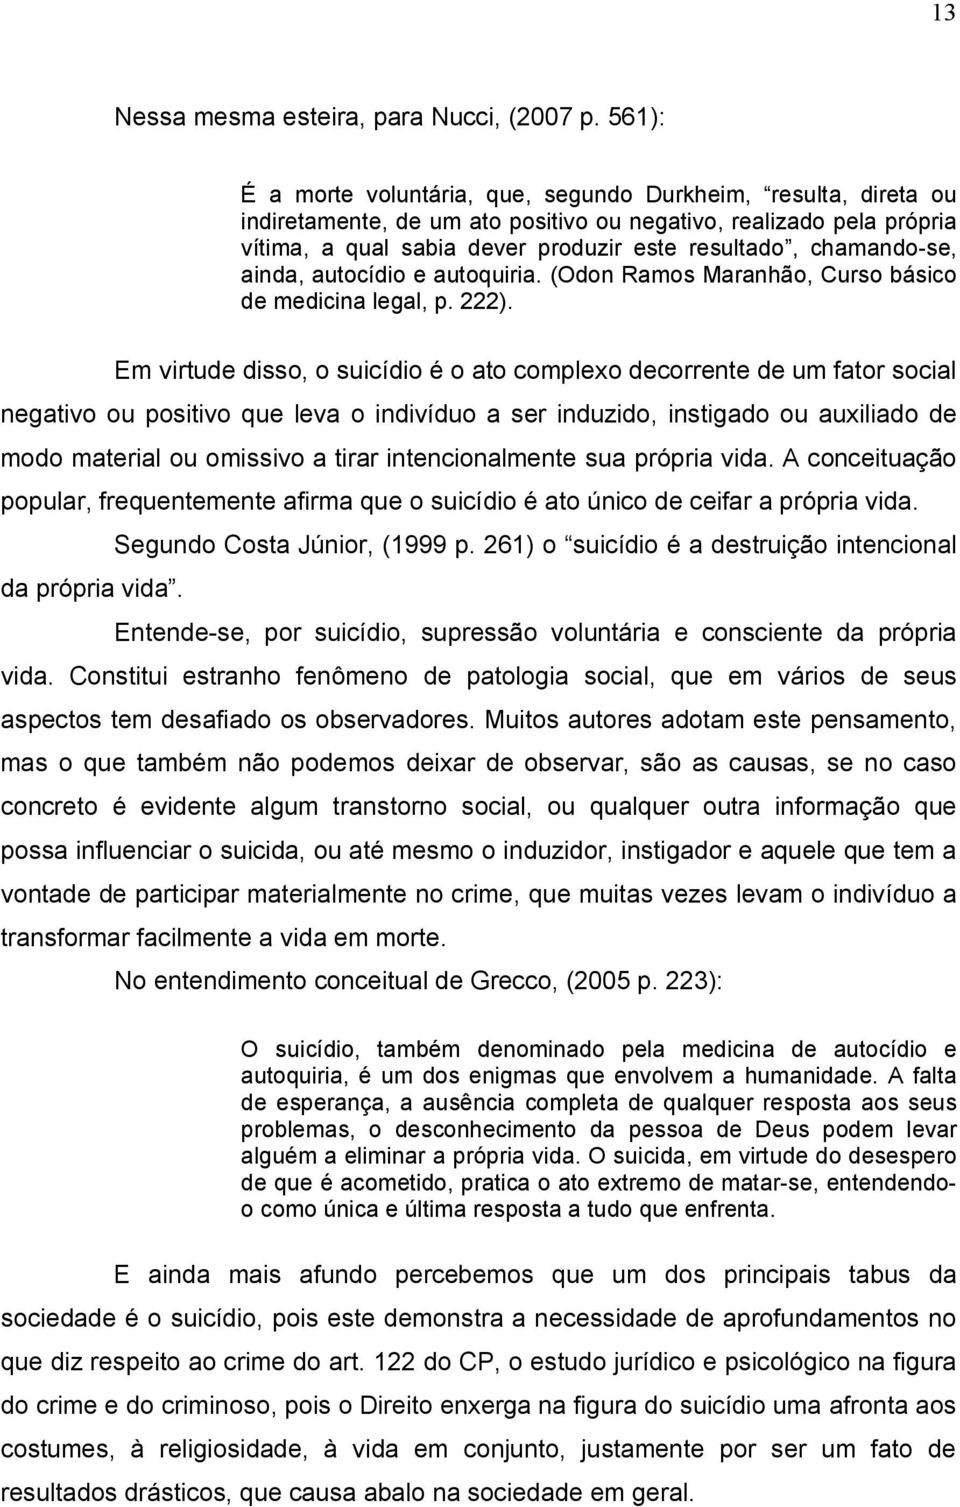 chamando se, ainda, autocídio e autoquiria. (Odon Ramos Maranhão, Curso básico de medicina legal, p. 222).